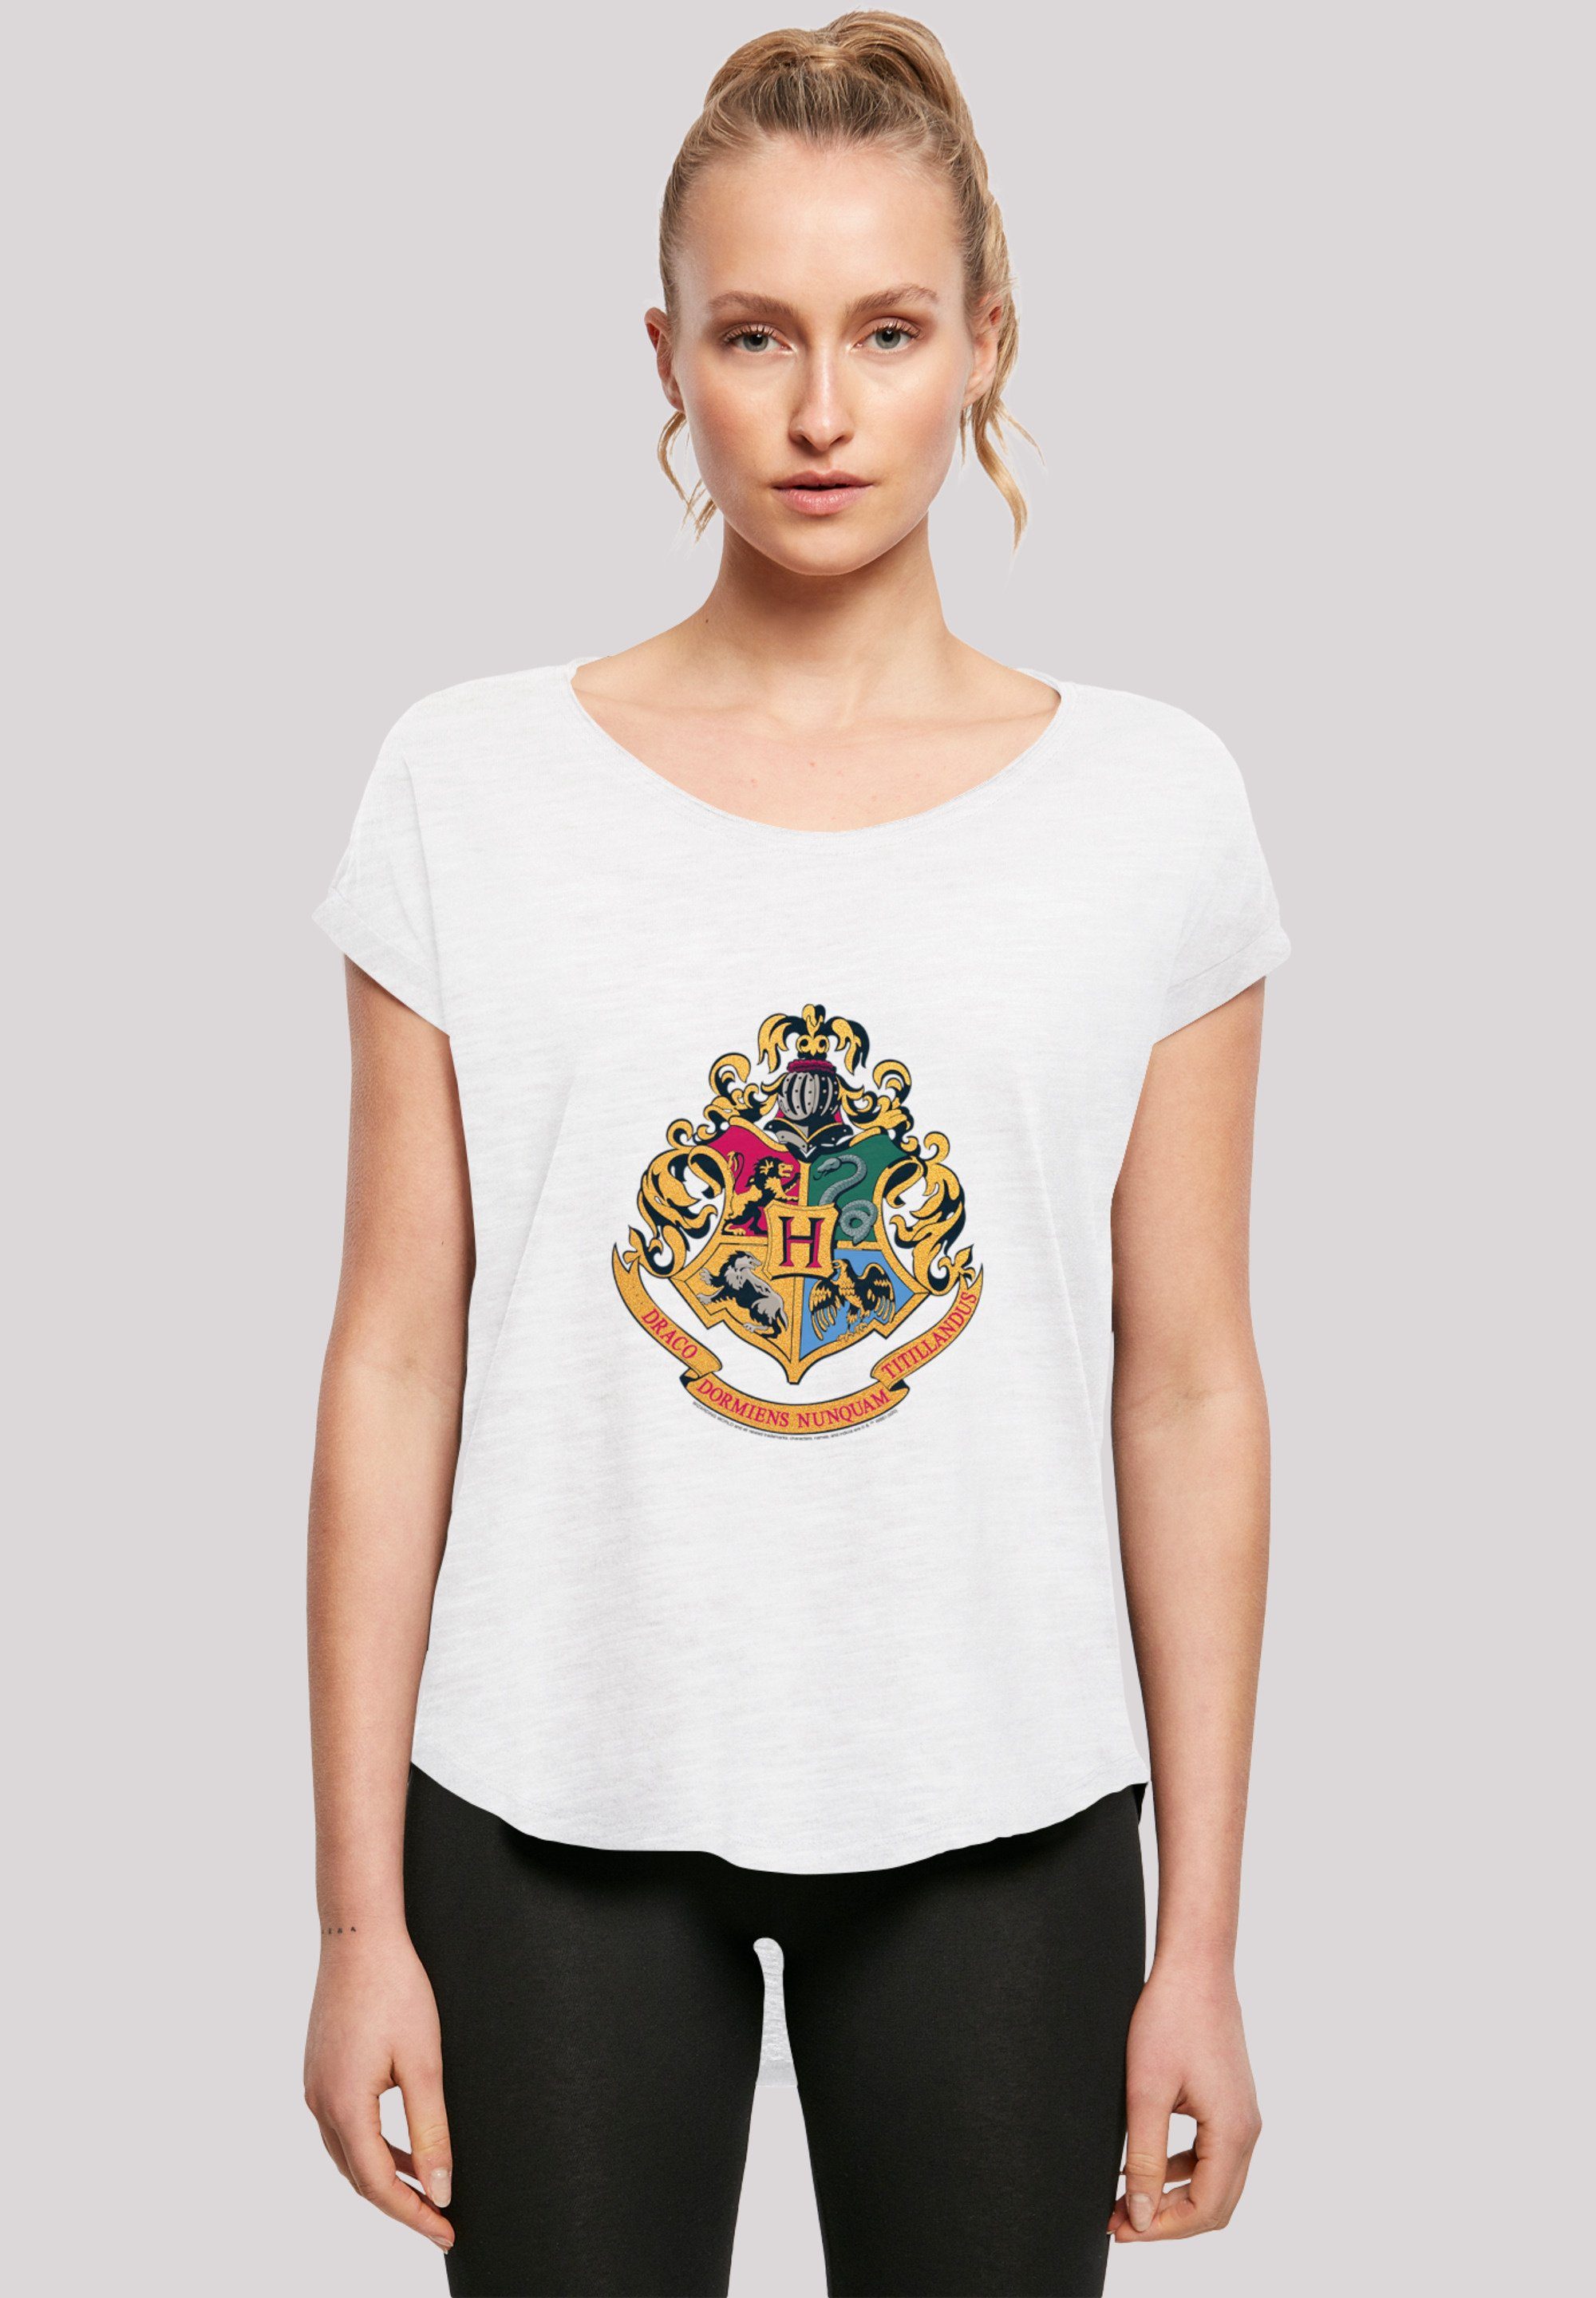 F4NT4STIC T-Shirt Harry Potter Hogwarts Crest Gold Print, Sehr weicher  Baumwollstoff mit hohem Tragekomfort